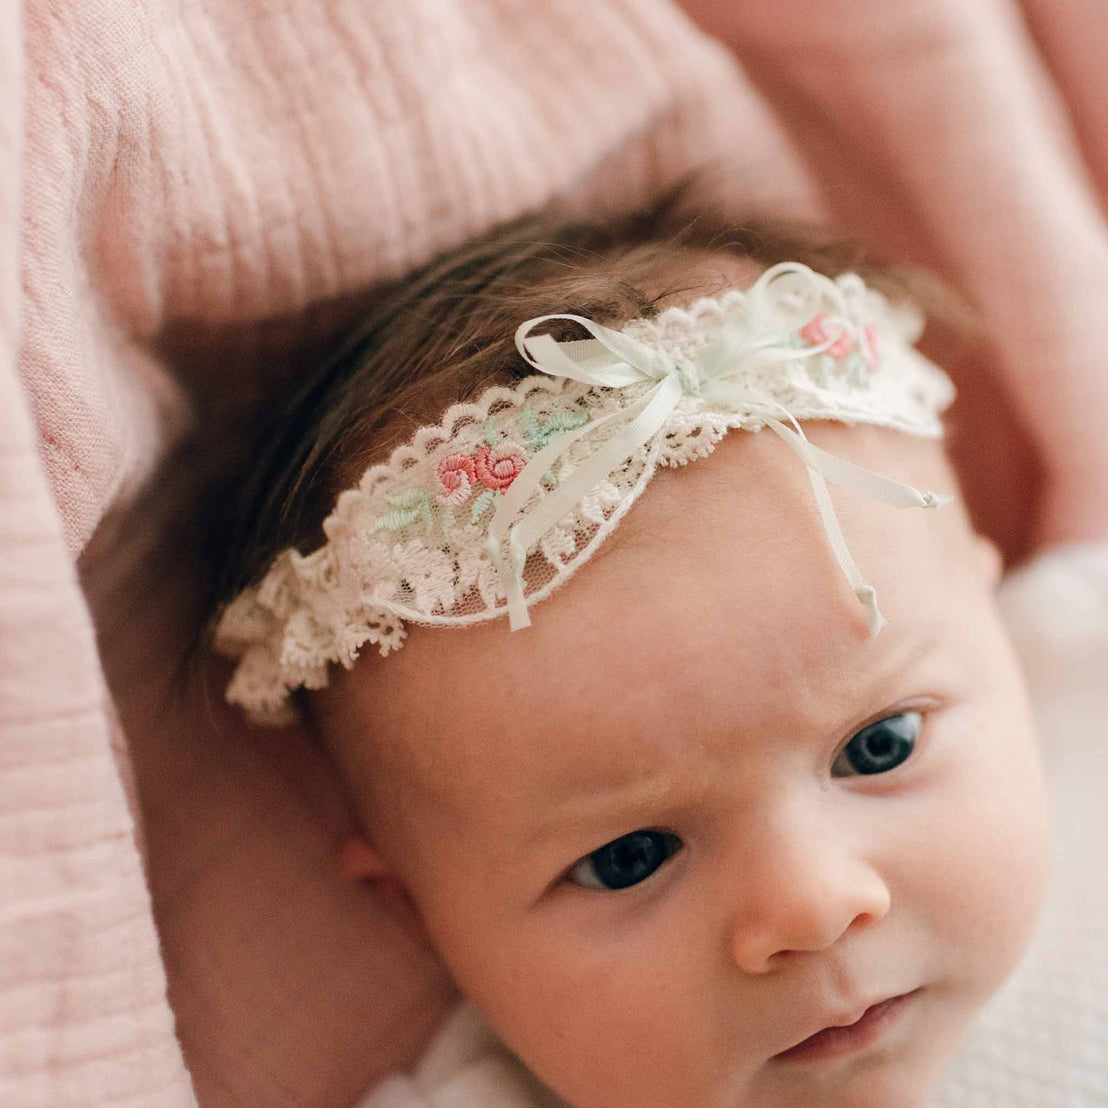 Chloe lace headband on baby